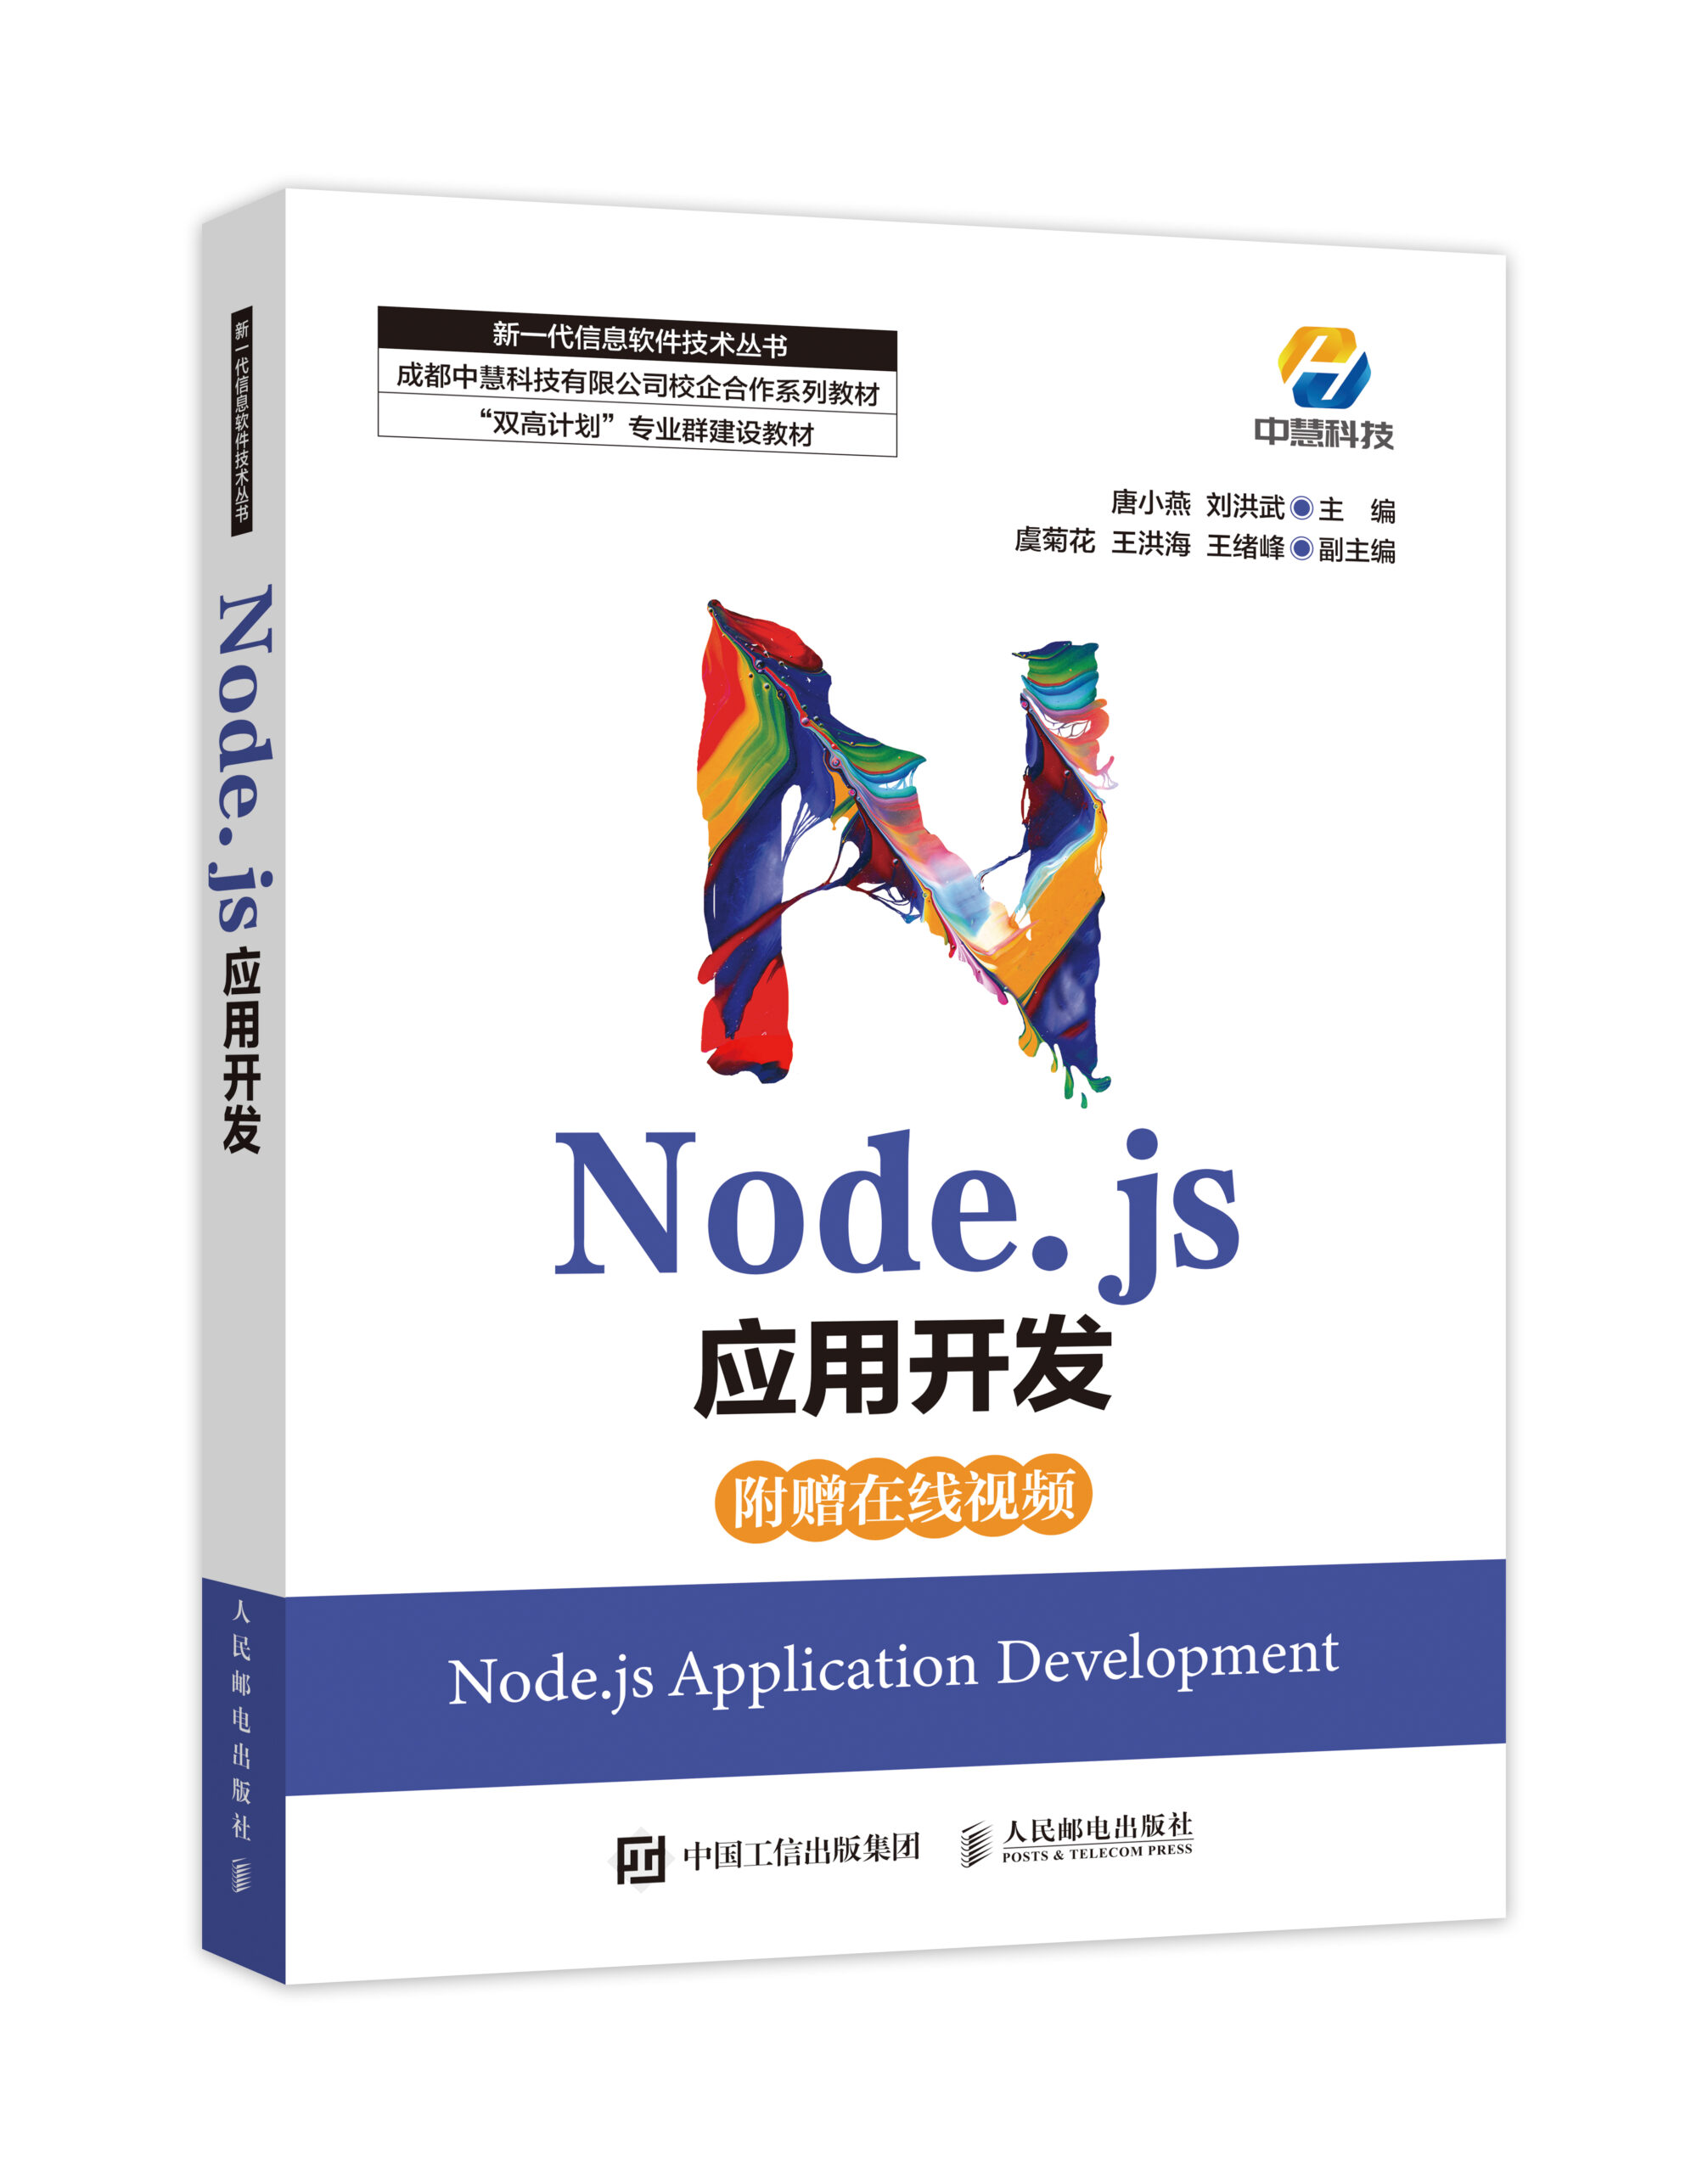 中慧集团Web技术校企合作系列教材-《 Node.js应用开发》介绍